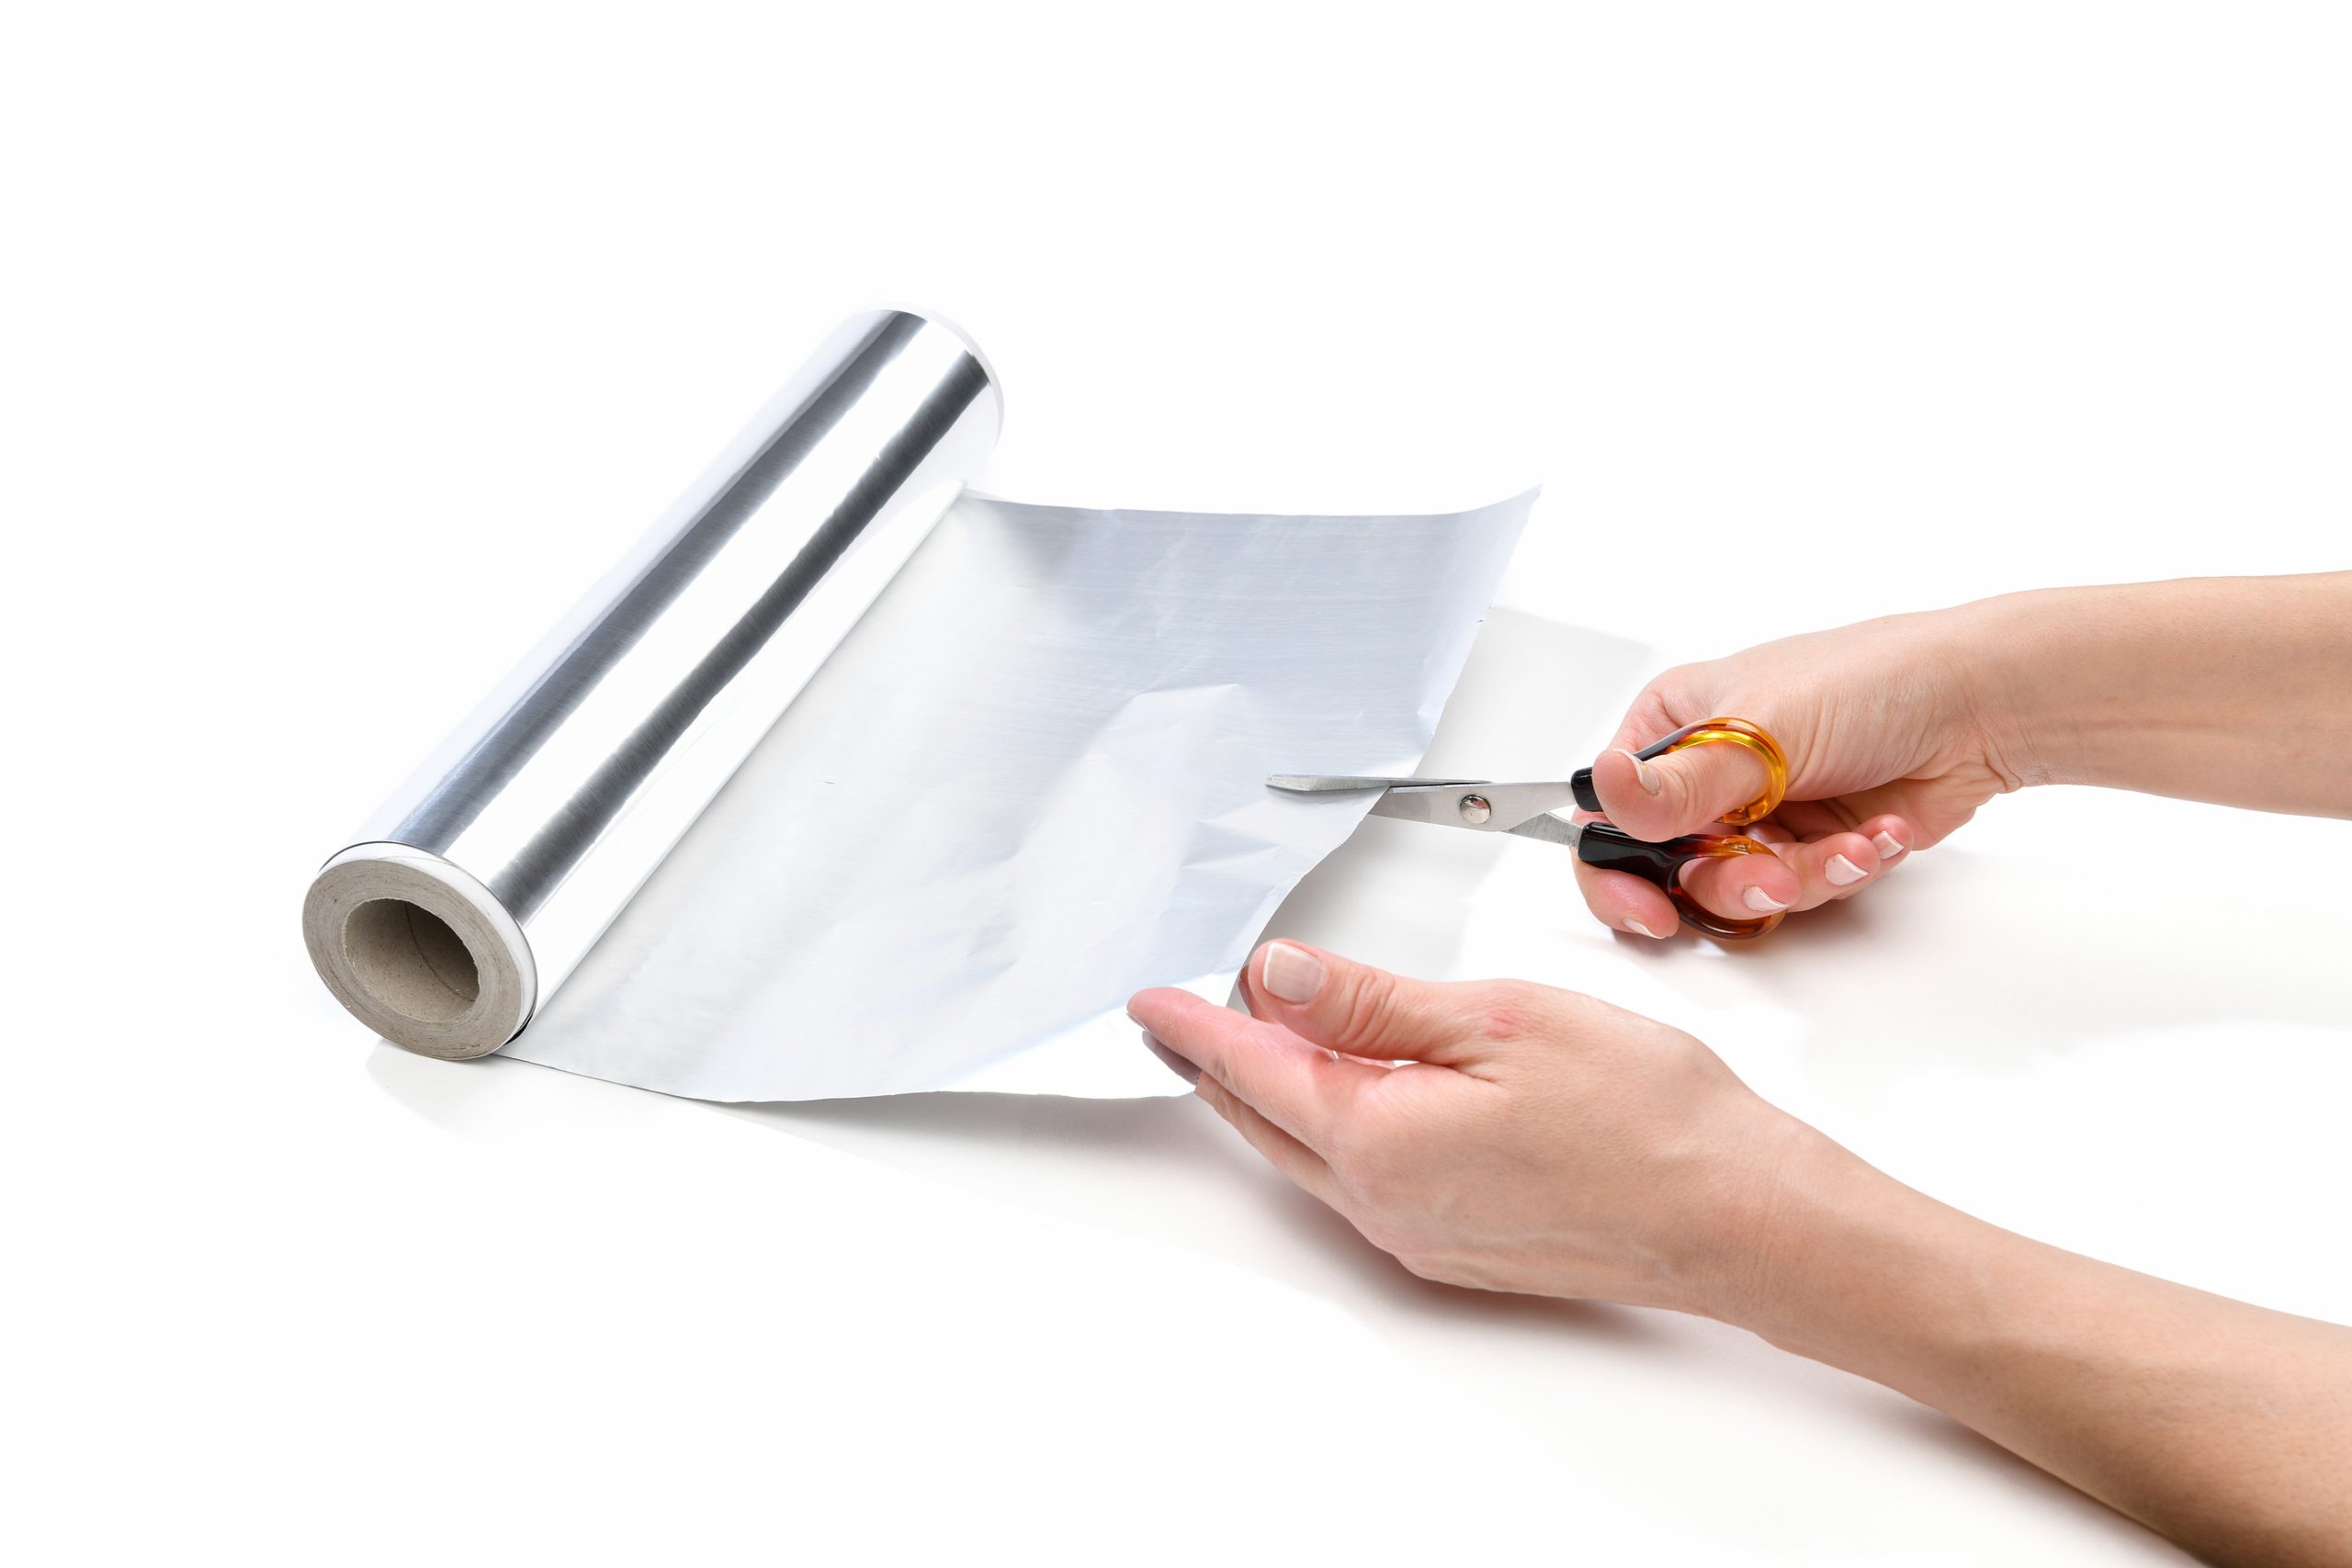 Lifehack, female hand cutting aluminum foil to sharpen scissors